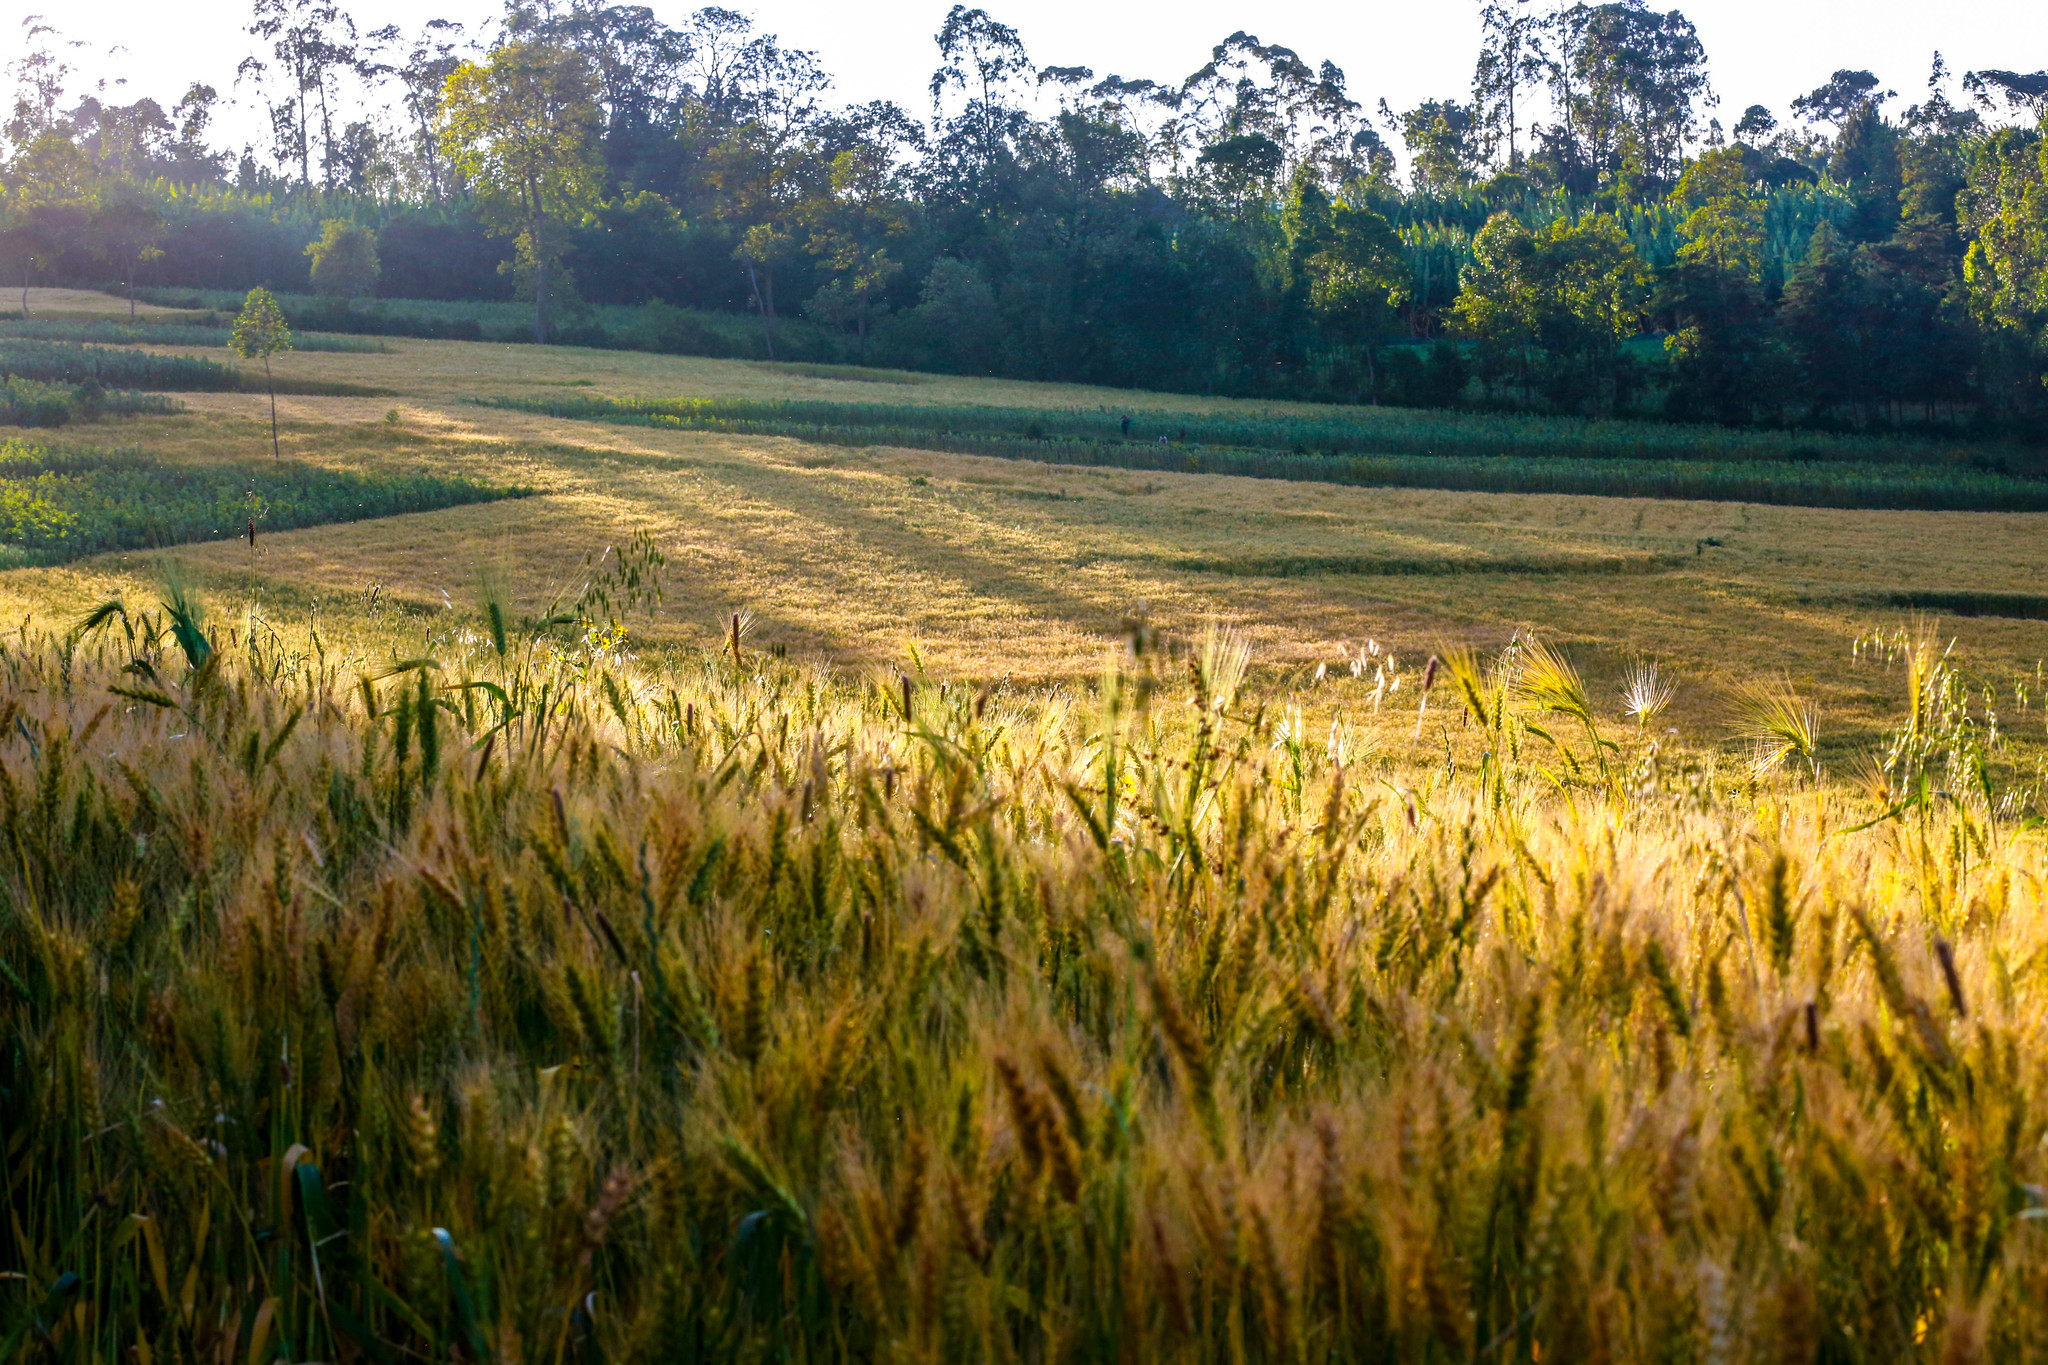 A wheat field in Ethiopia. (Photo: Apollo Habtamu/ILRI)